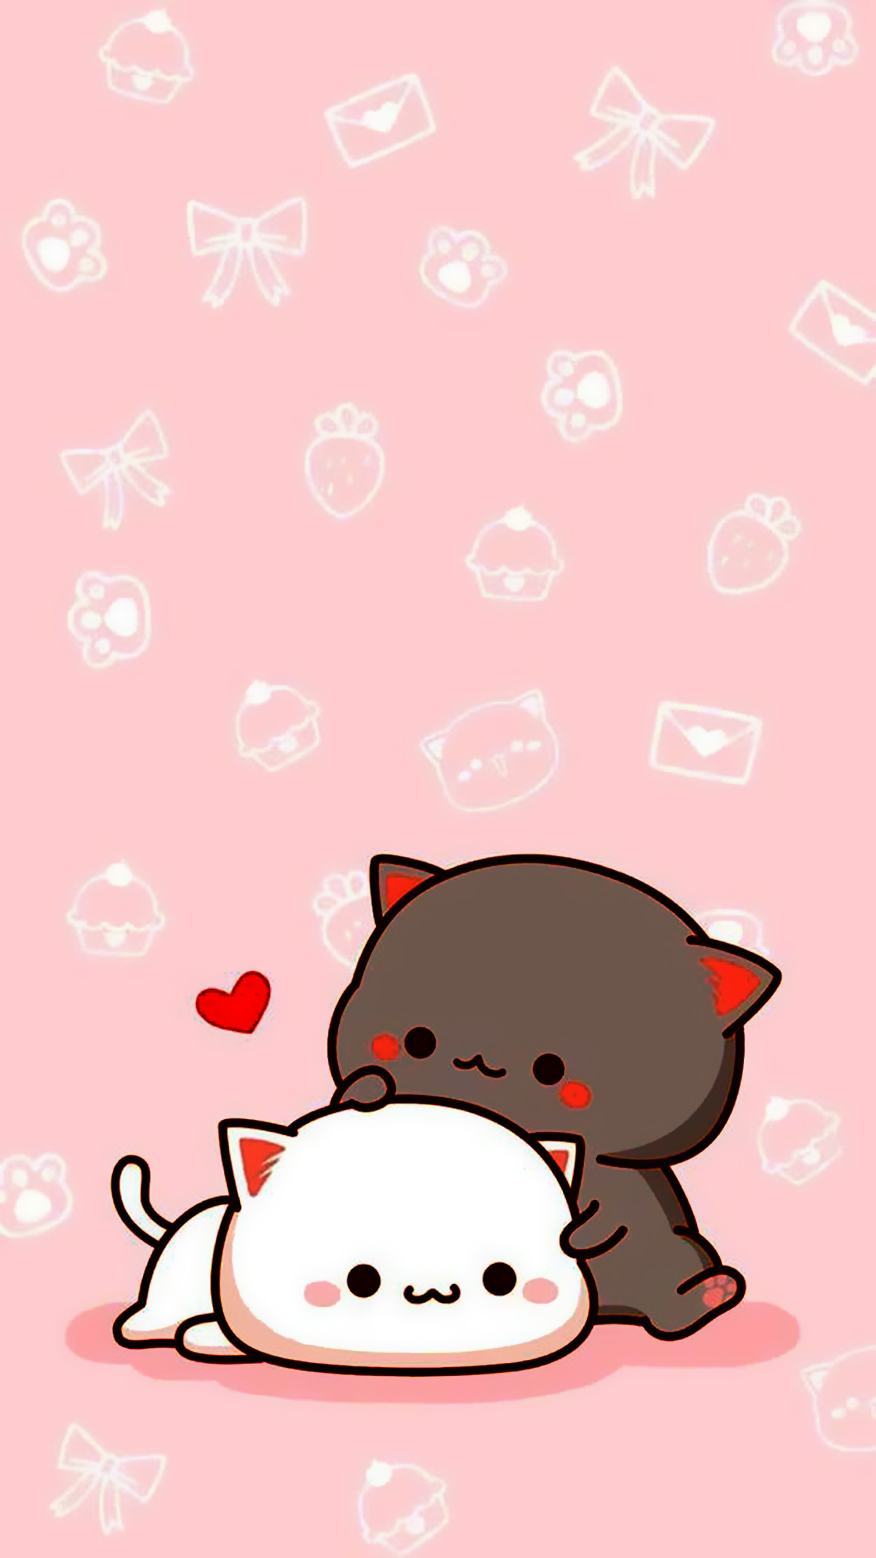 Cat Sticker - Ảnh Anime Mèo Dễ Thương PNG Image | Transparent PNG Free  Download on SeekPNG